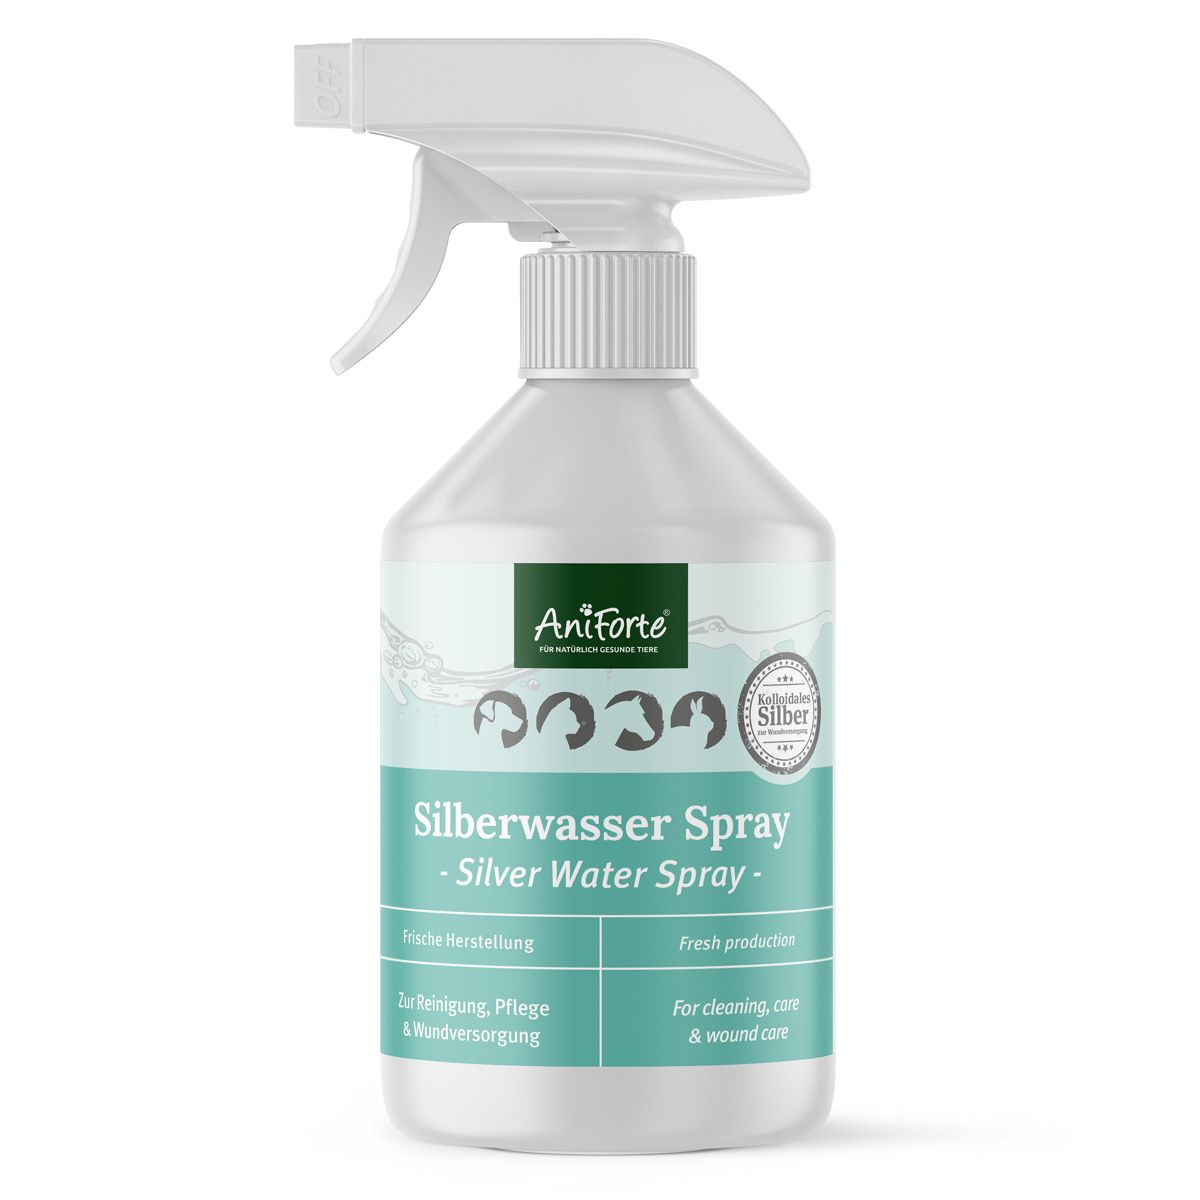 AniForte Silberwasser Spray